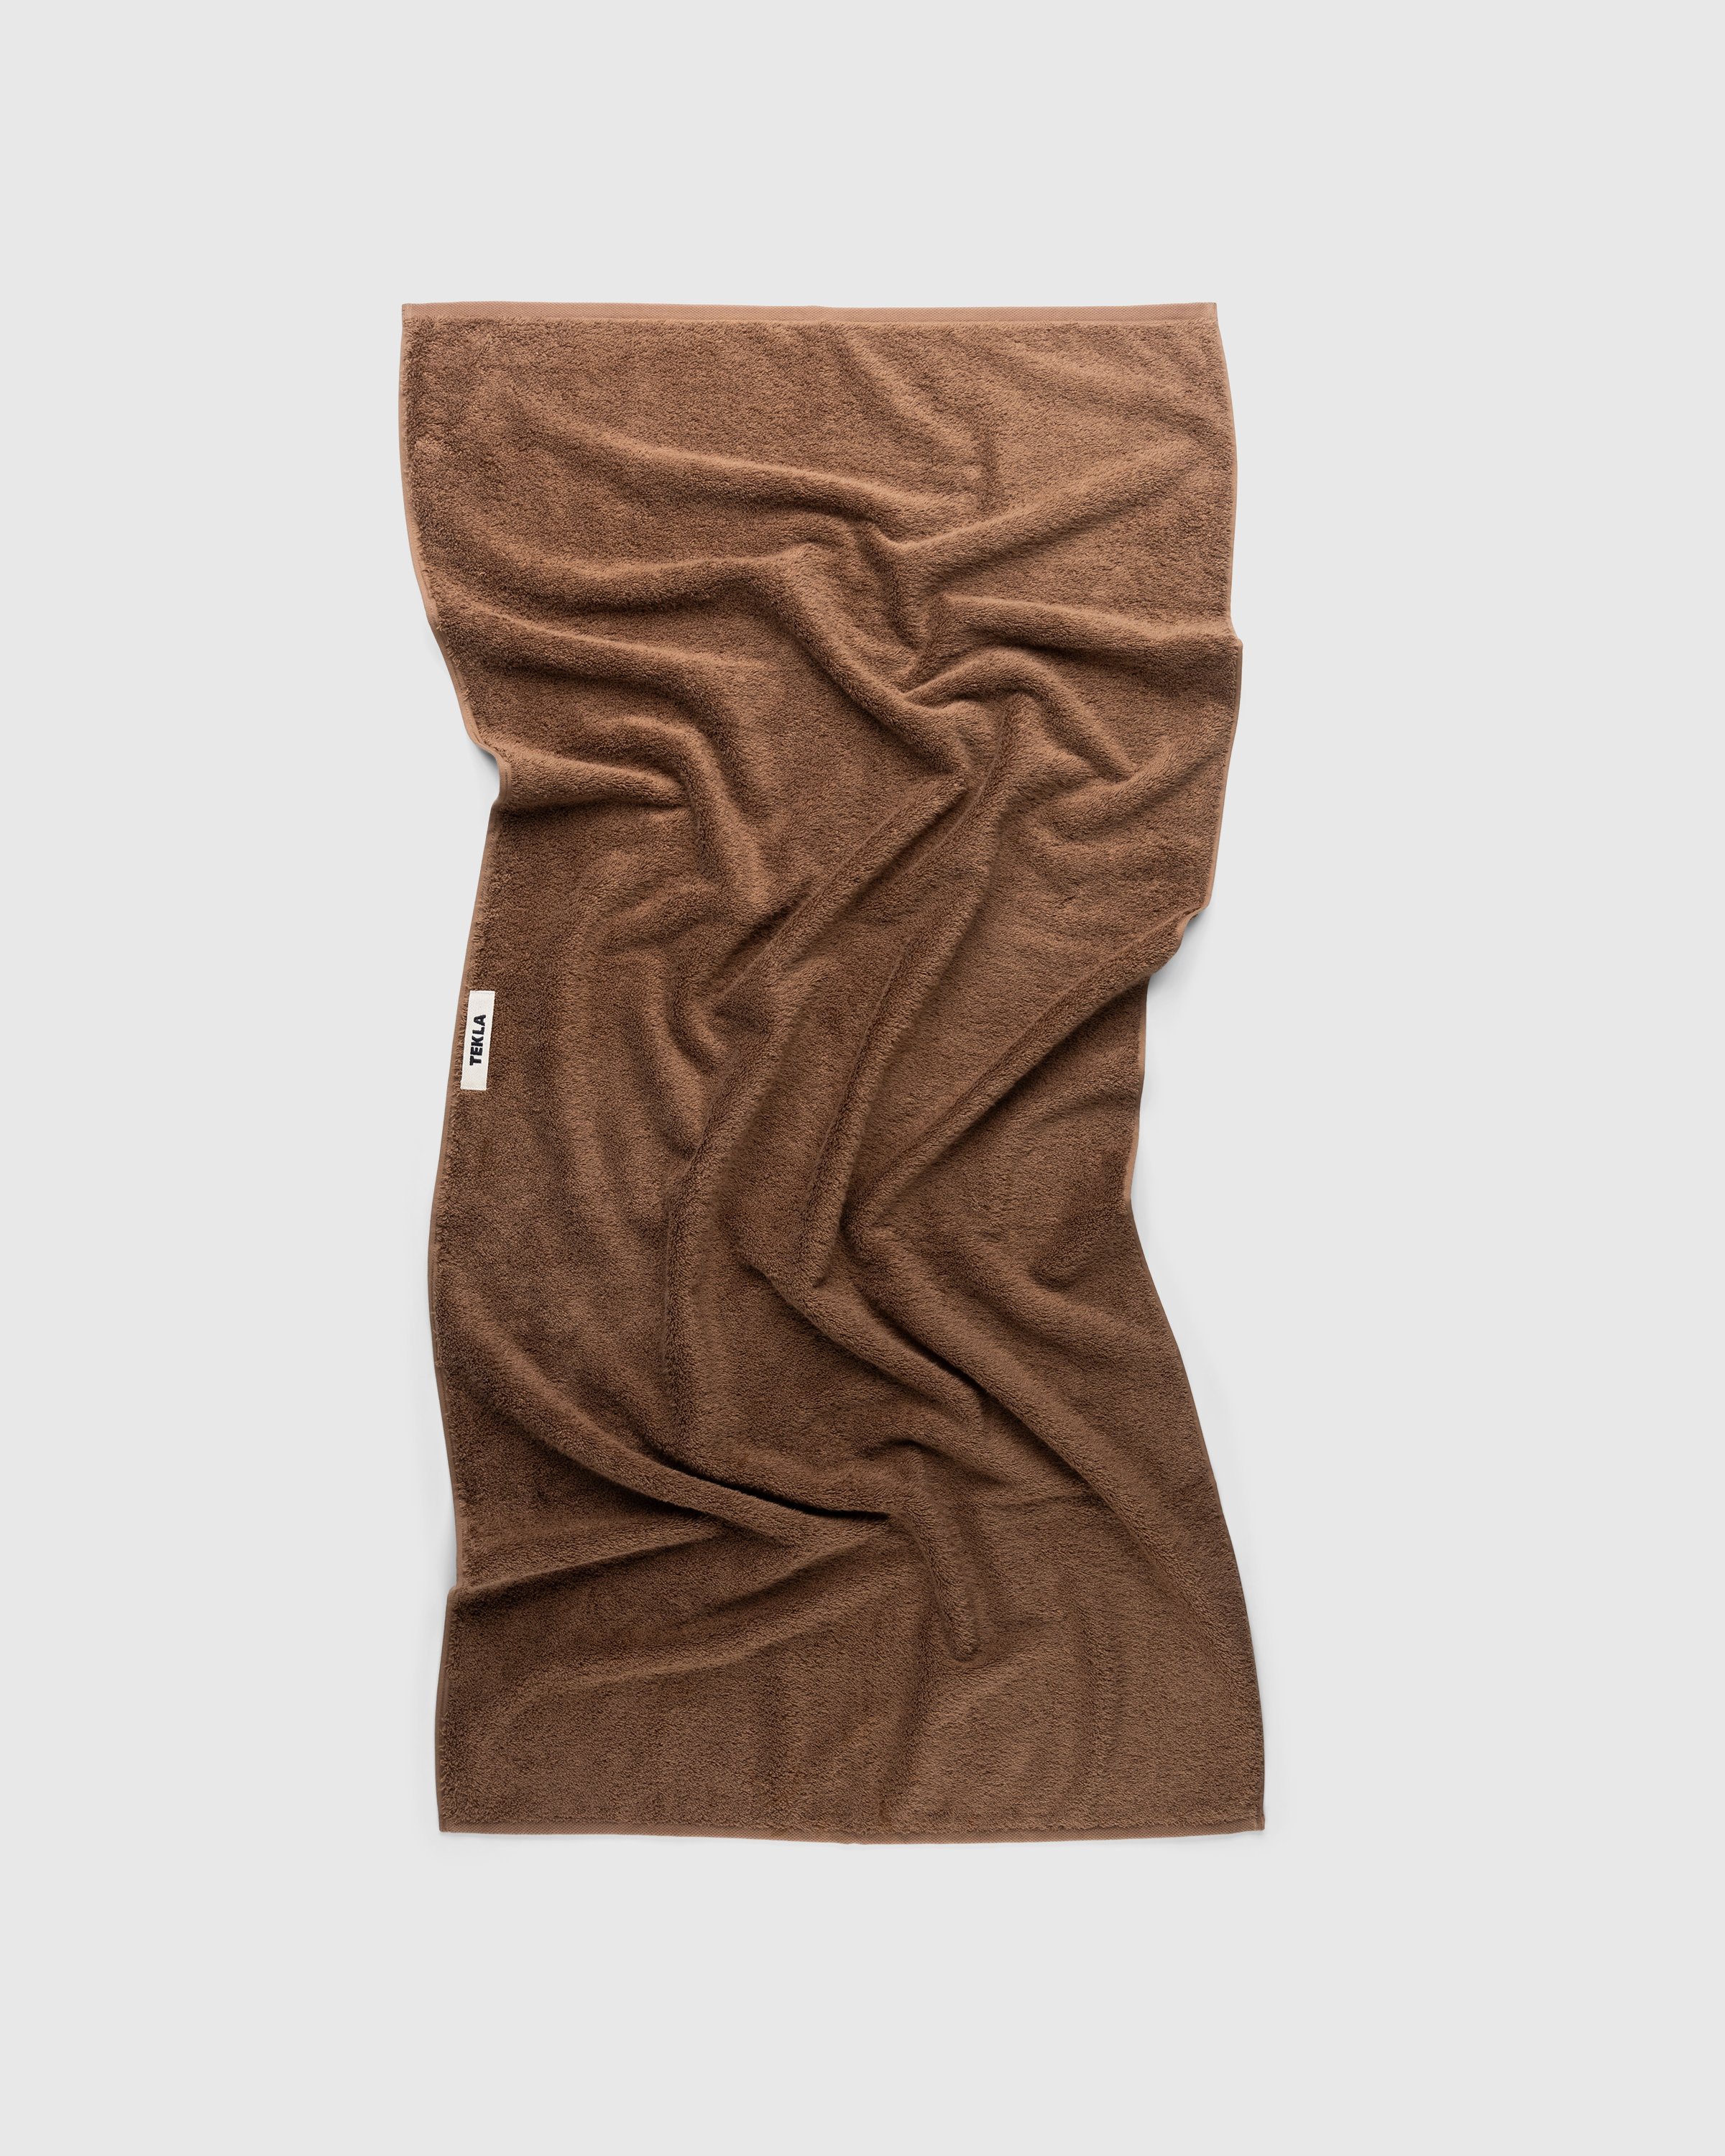 Tekla - Bath Towel Kodiak Brown - Lifestyle - Brown - Image 1